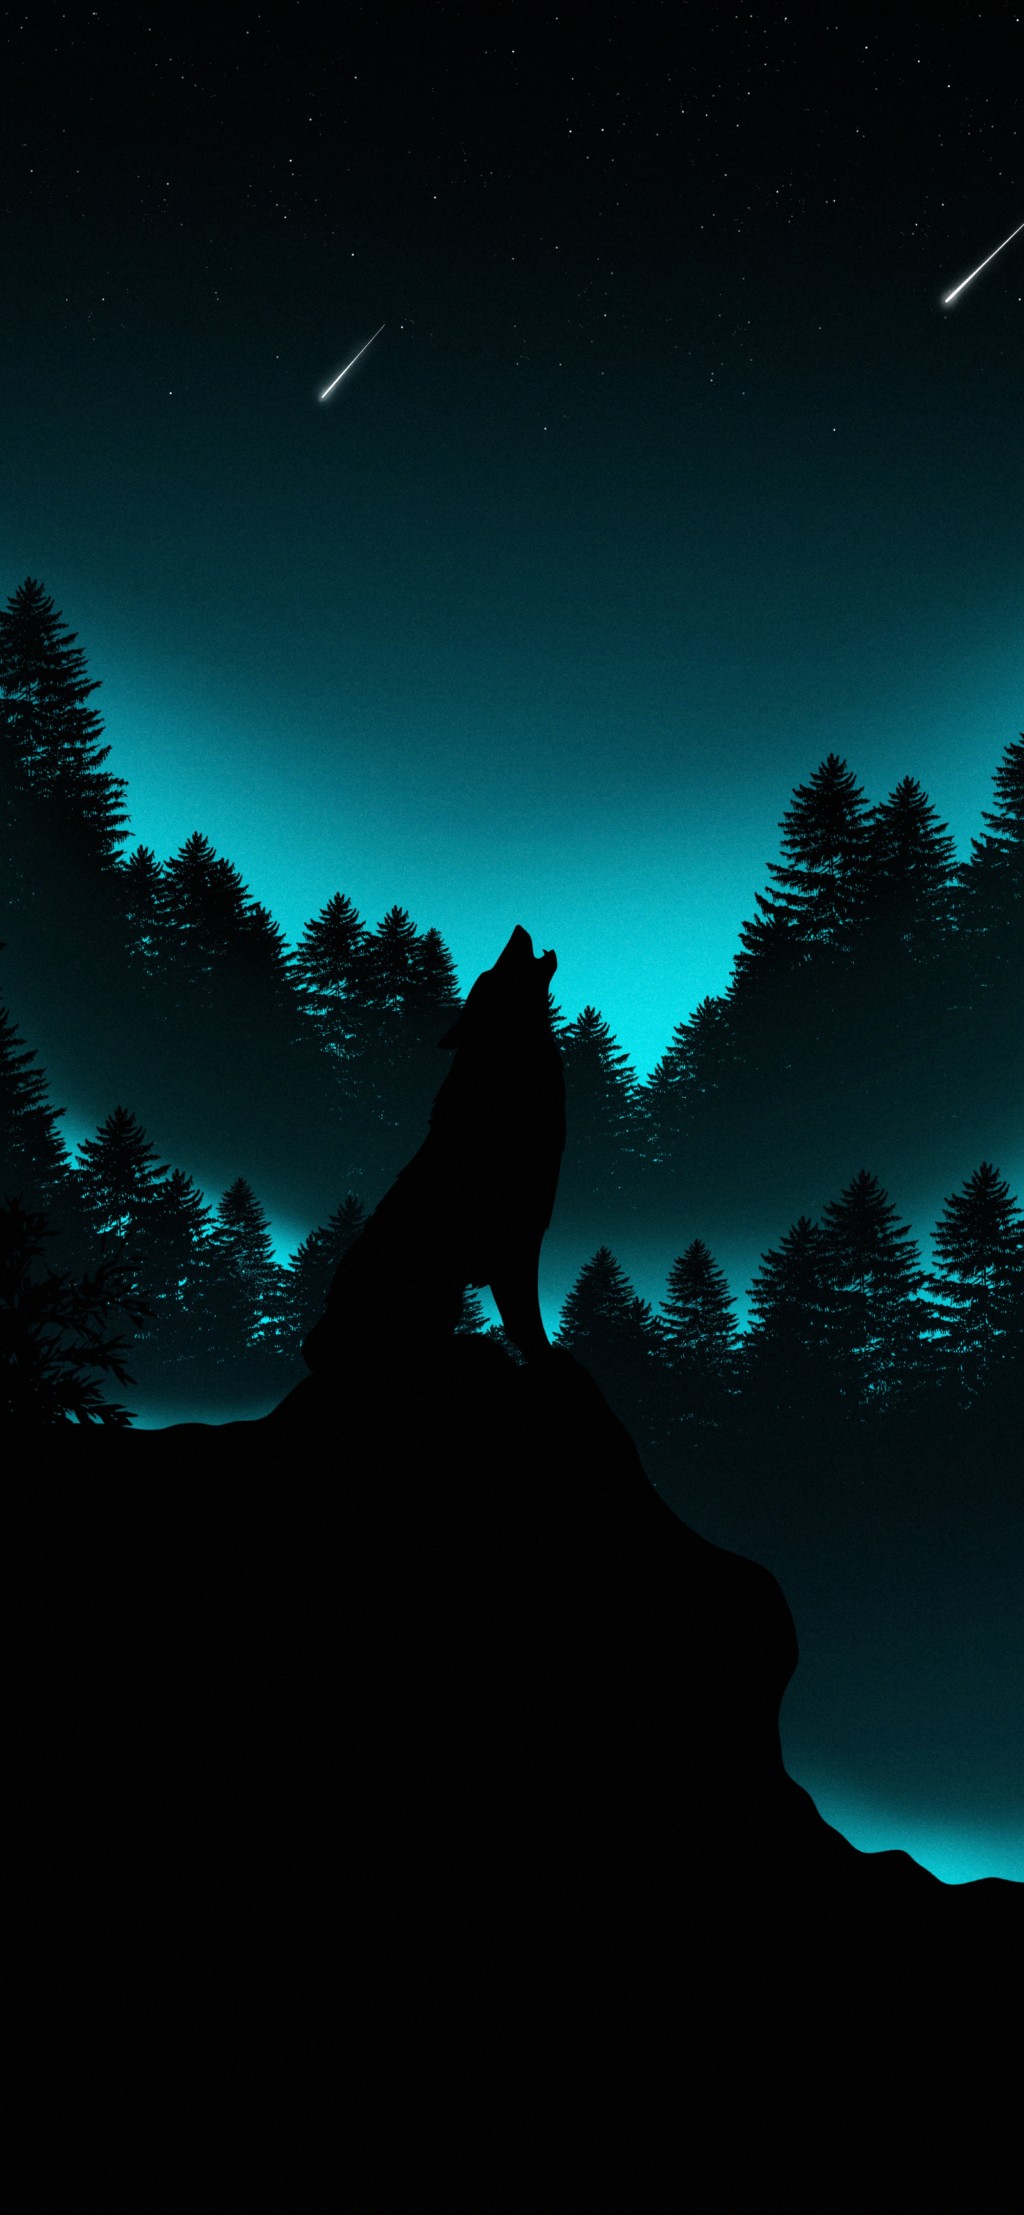 狼系列唯美意境手机壁纸 动物 靓丽图库